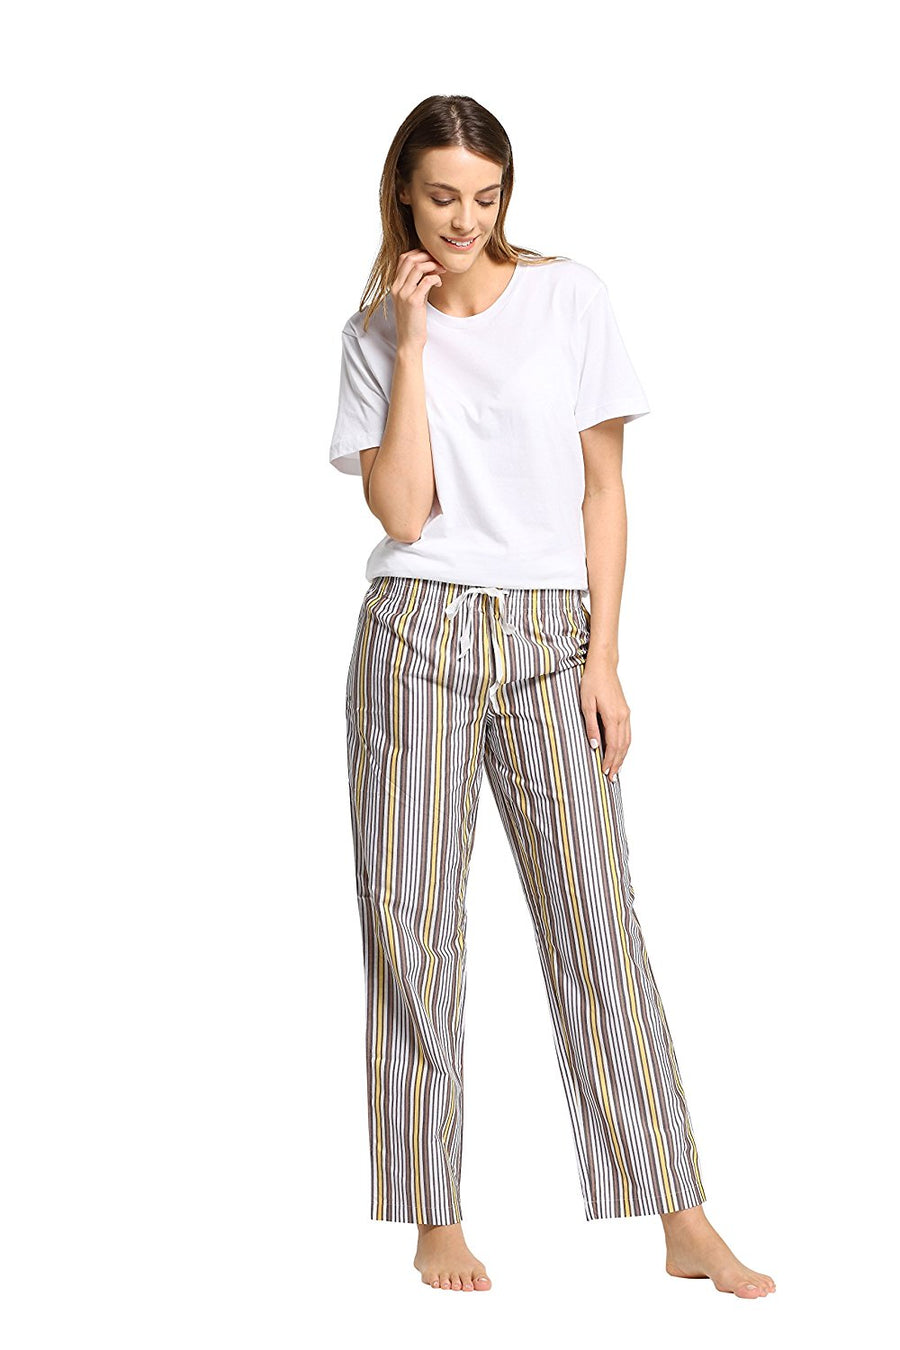 CYZ Women's 100% Cotton Super Soft Flannel Plaid Pajama/Lounge